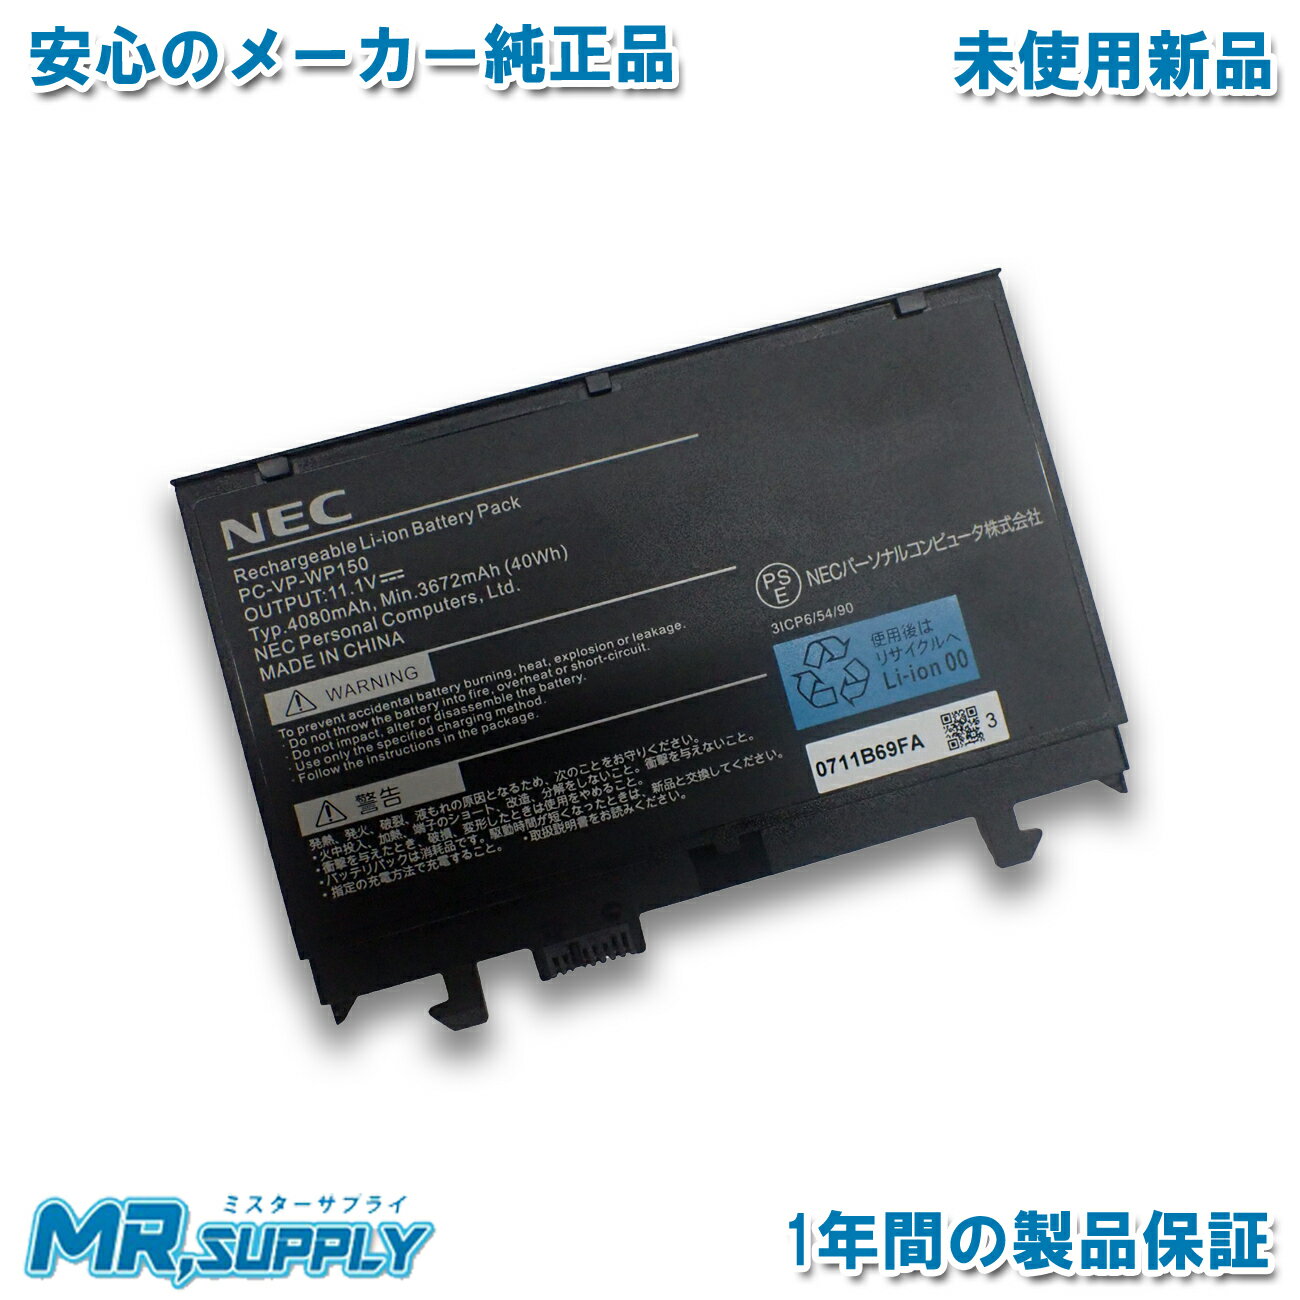 【純正】Gs73 8rf 11.4V 64.98Wh msi ノート PC ノートパソコン 純正 交換バッテリー